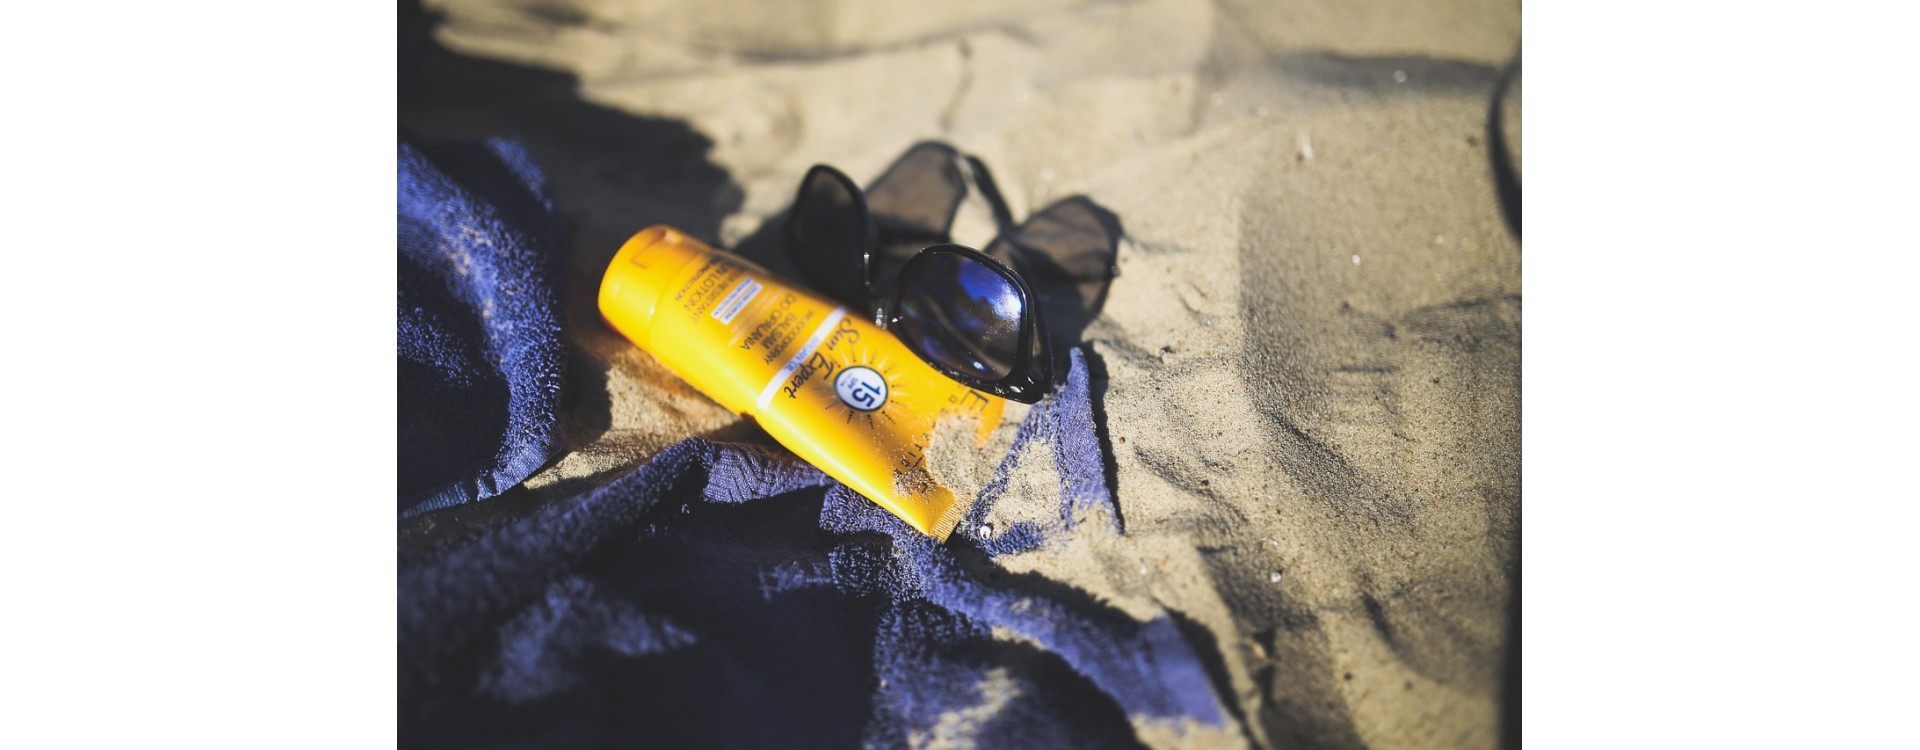 Comment savoir si votre crème solaire est toujours utilisable ?